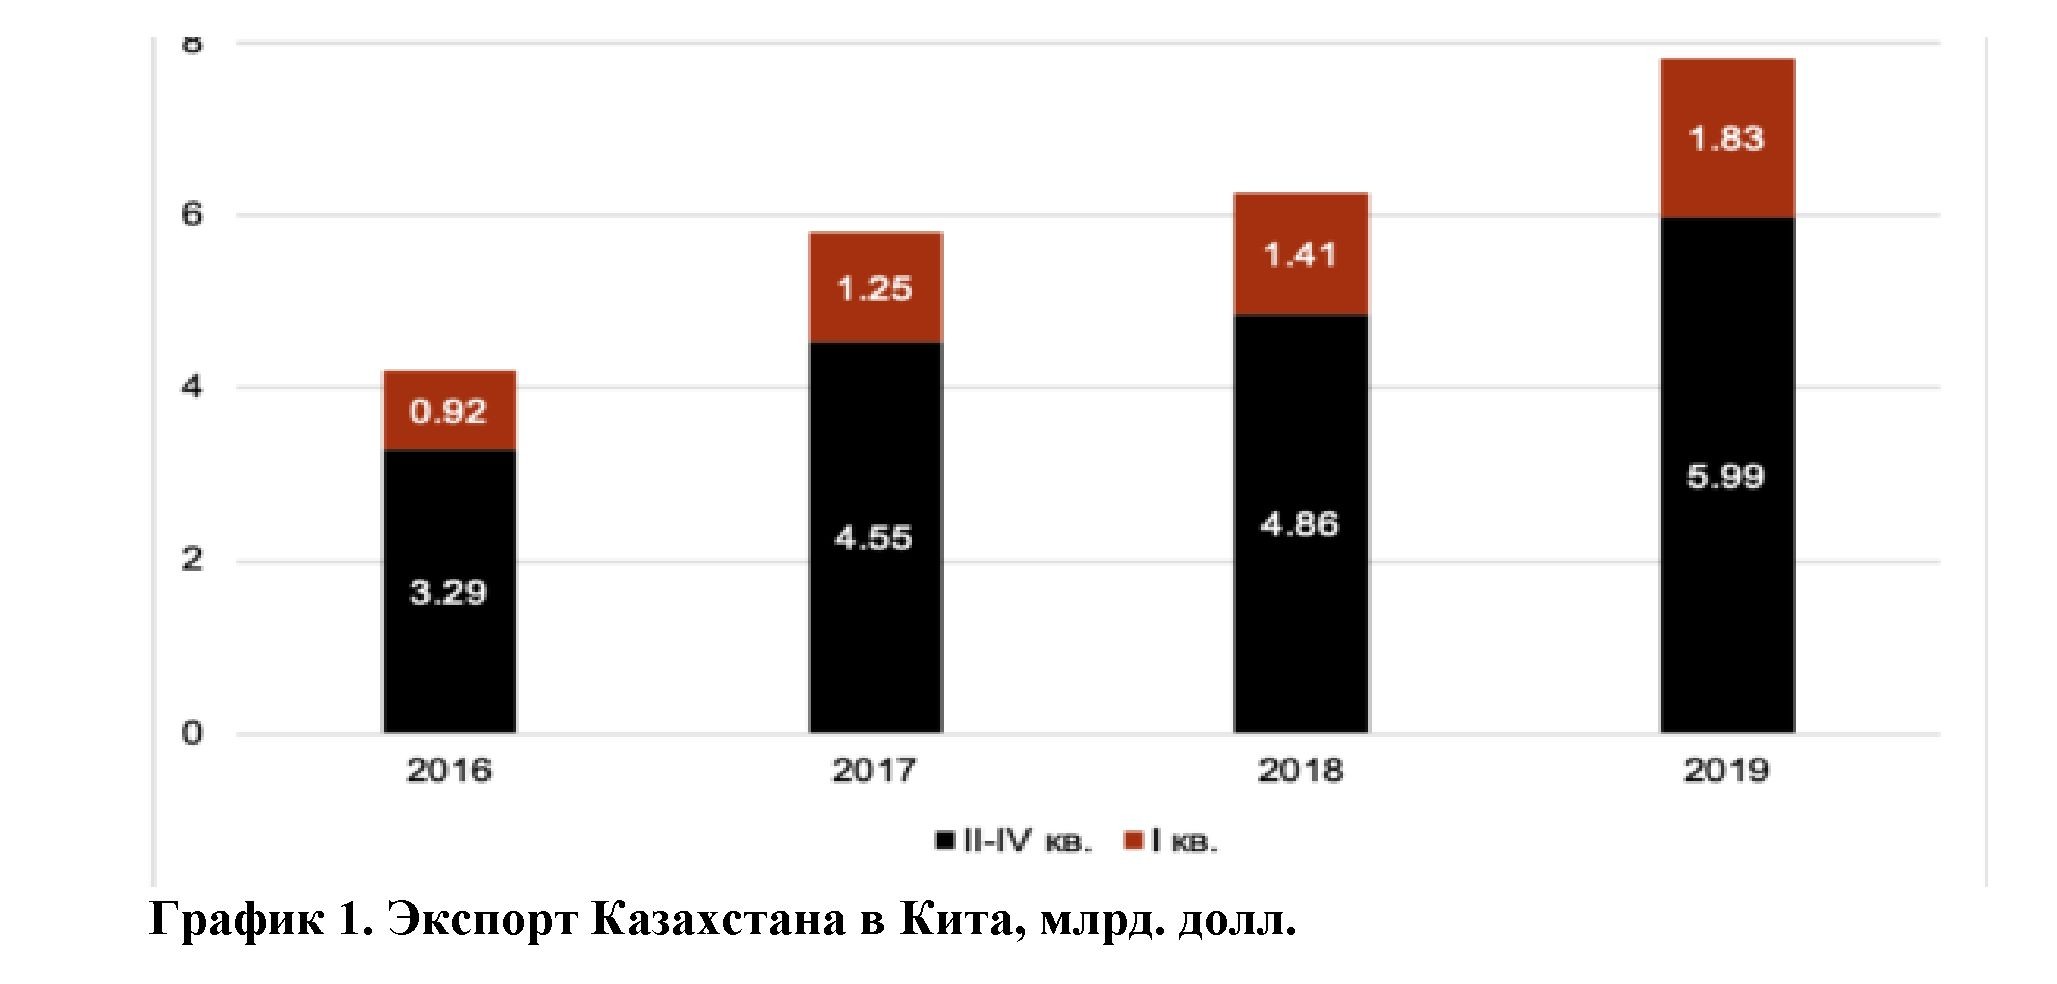 Влияние covid-19 на финансовый сектор экономики Казахстана